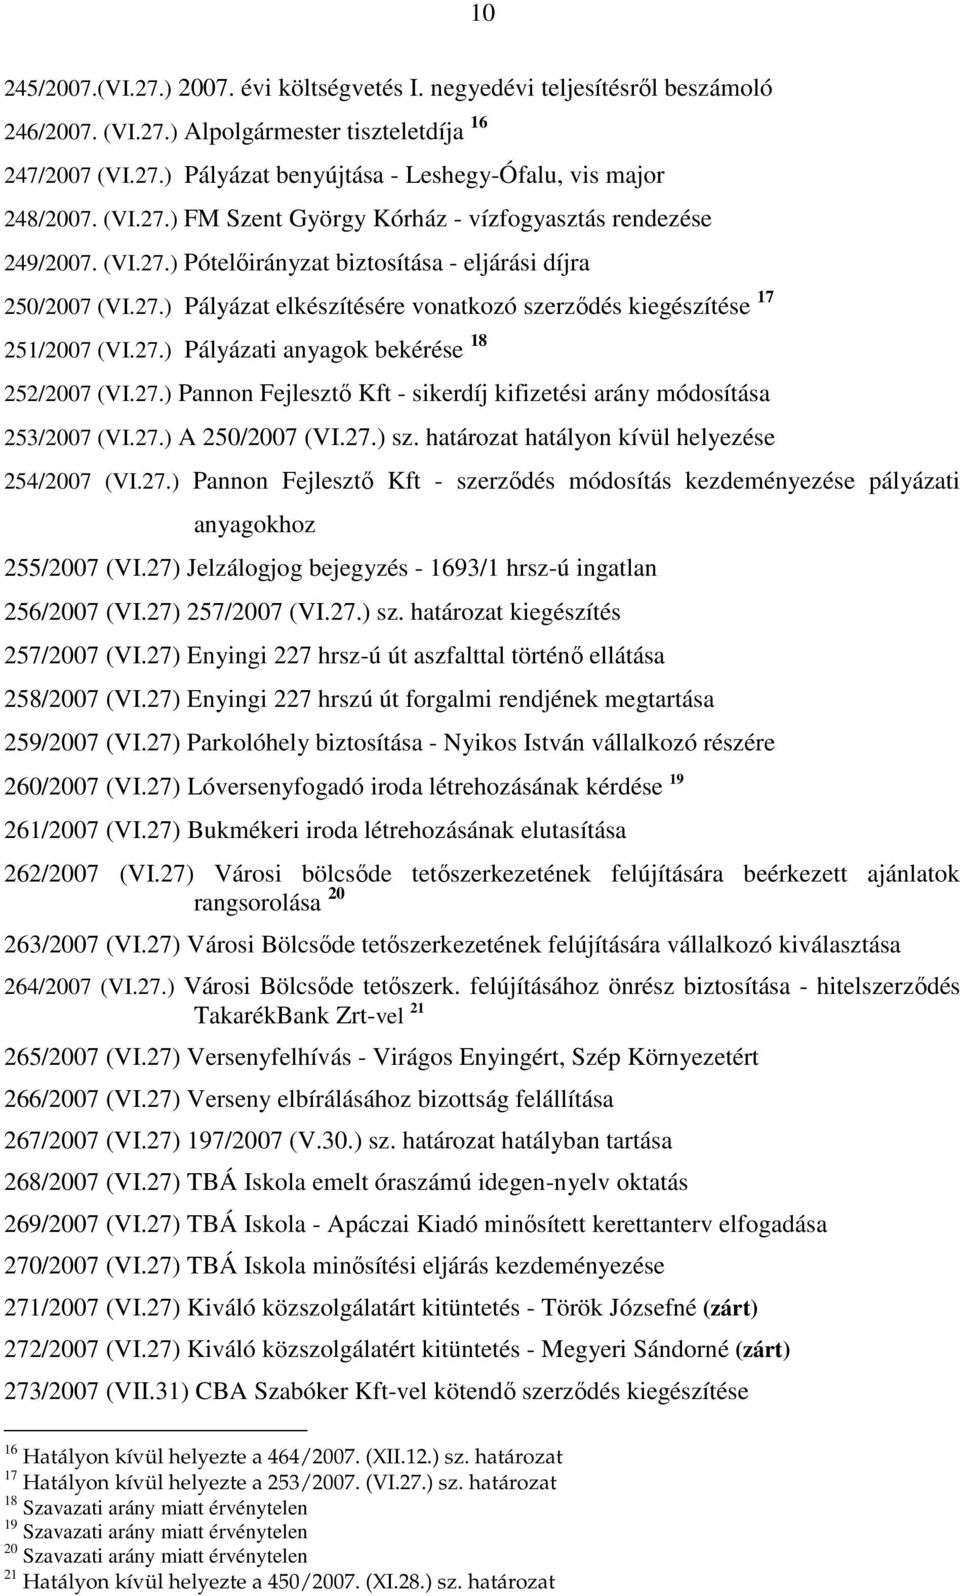 27.) Pályázati anyagok bekérése 18 252/2007 (VI.27.) Pannon Fejlesztı Kft - sikerdíj kifizetési arány módosítása 253/2007 (VI.27.) A 250/2007 (VI.27.) sz.